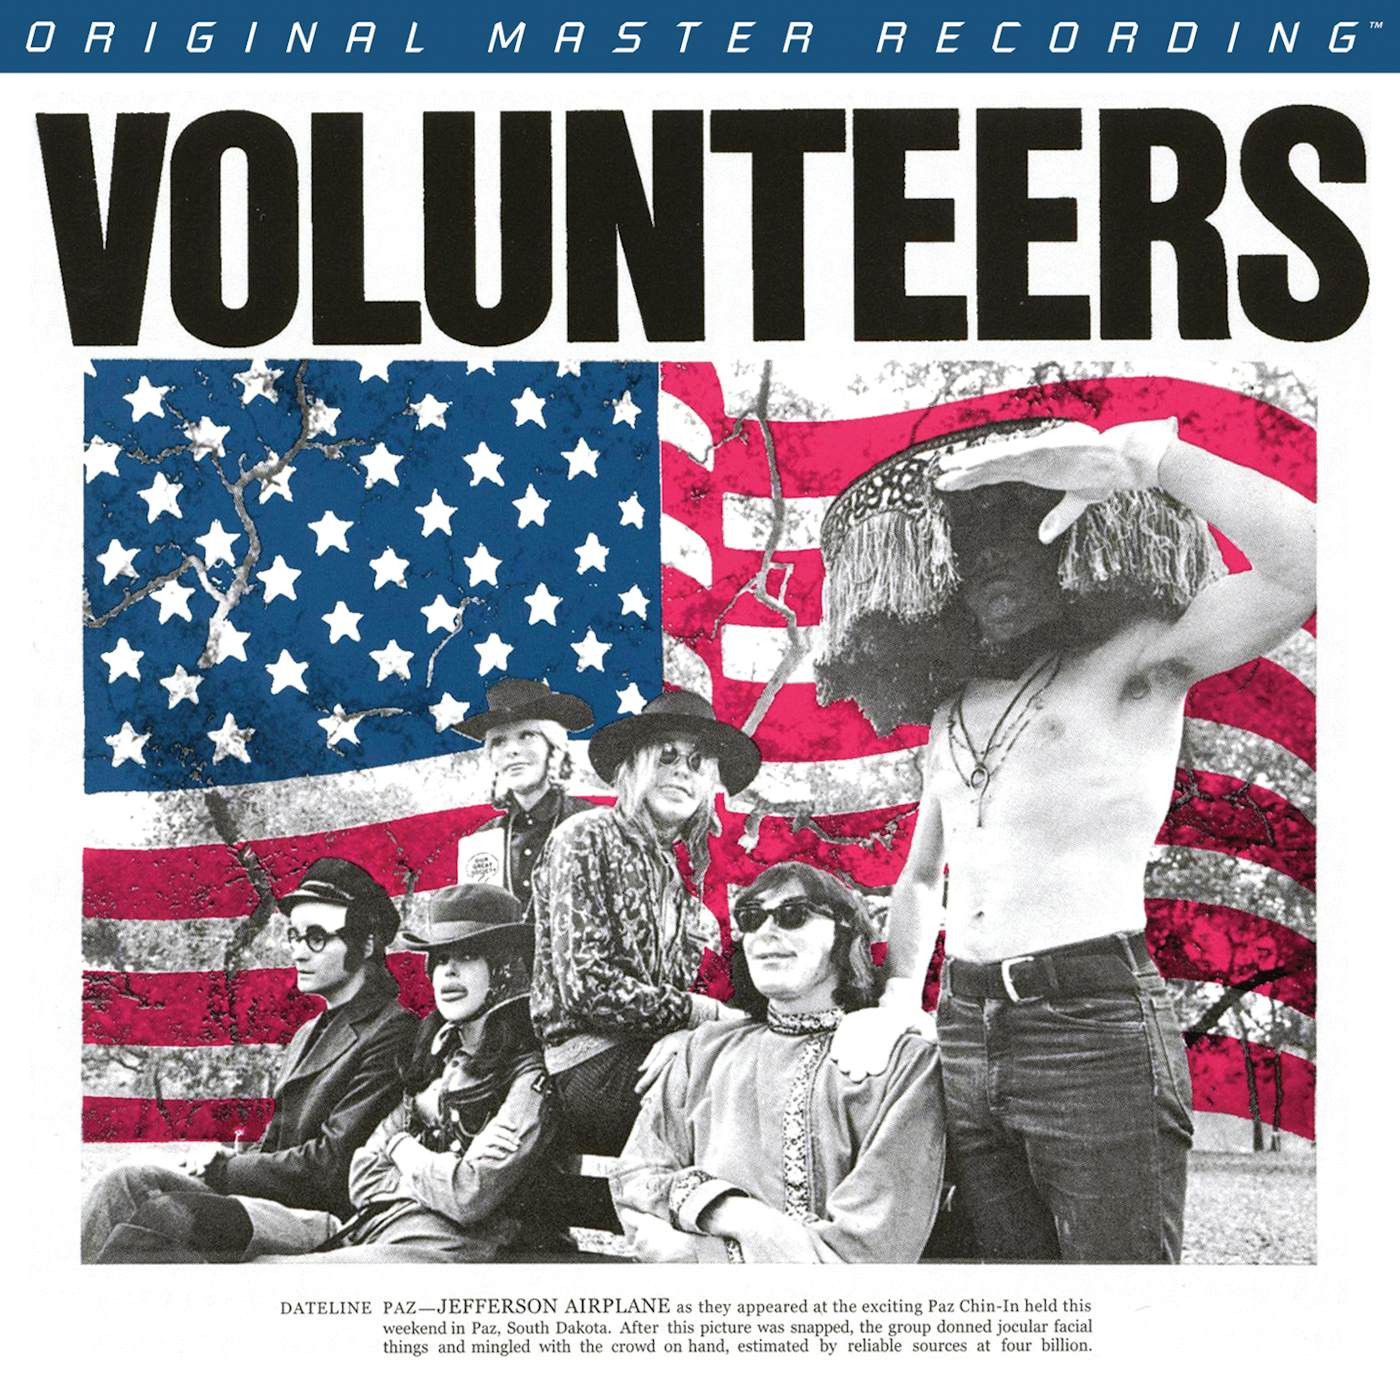 Jefferson Airplane Volunteers Vinyl Record